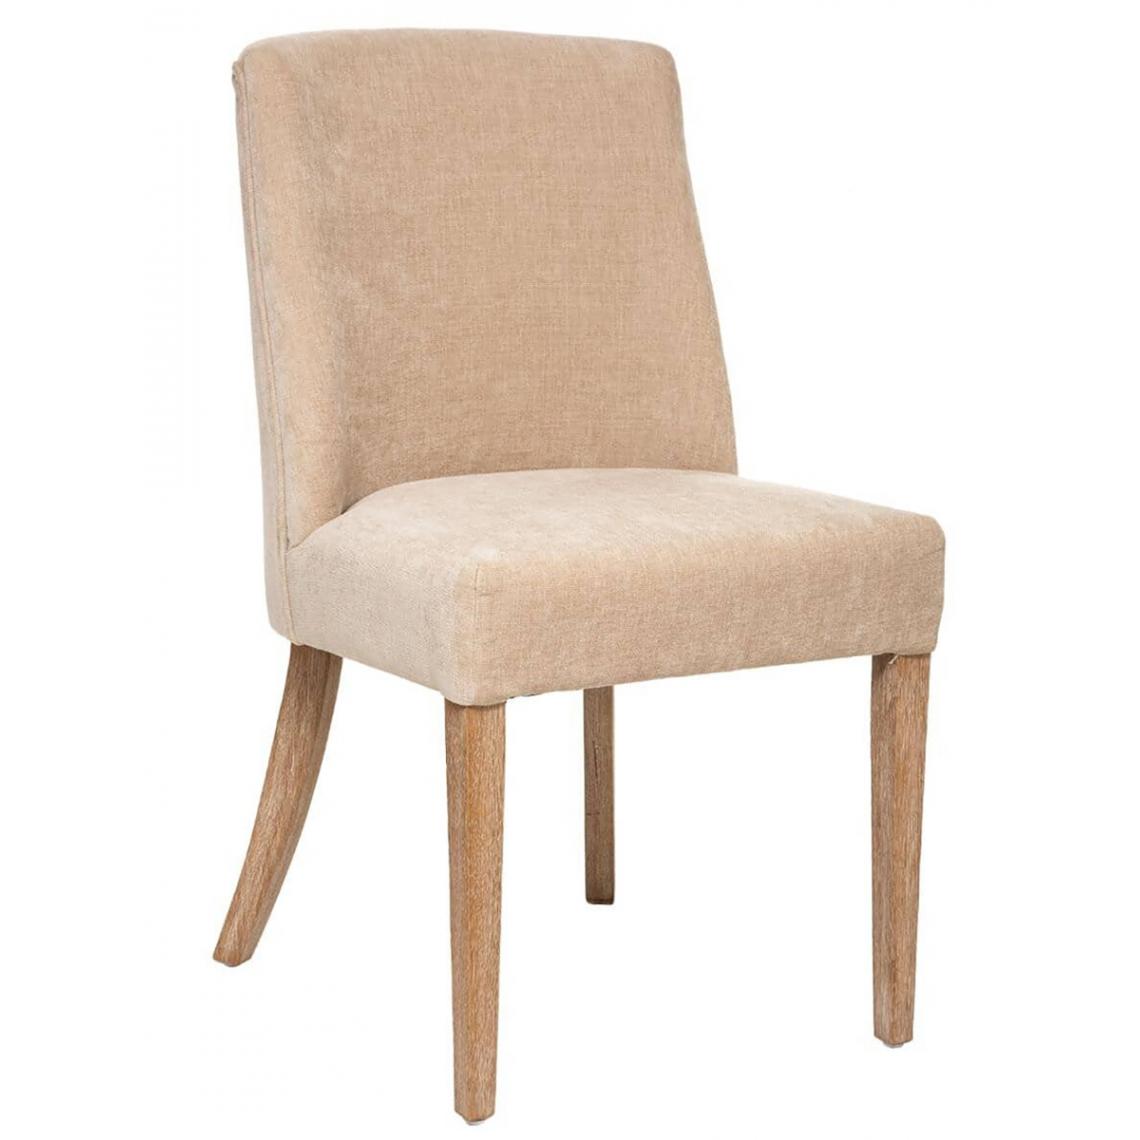 Pegane - Lot de 2 chaises de salle à manger en bois coloris beige lin - Longueur 49,5 x Profondeur 58,5 x Hauteur 89,5 cm - Chaises